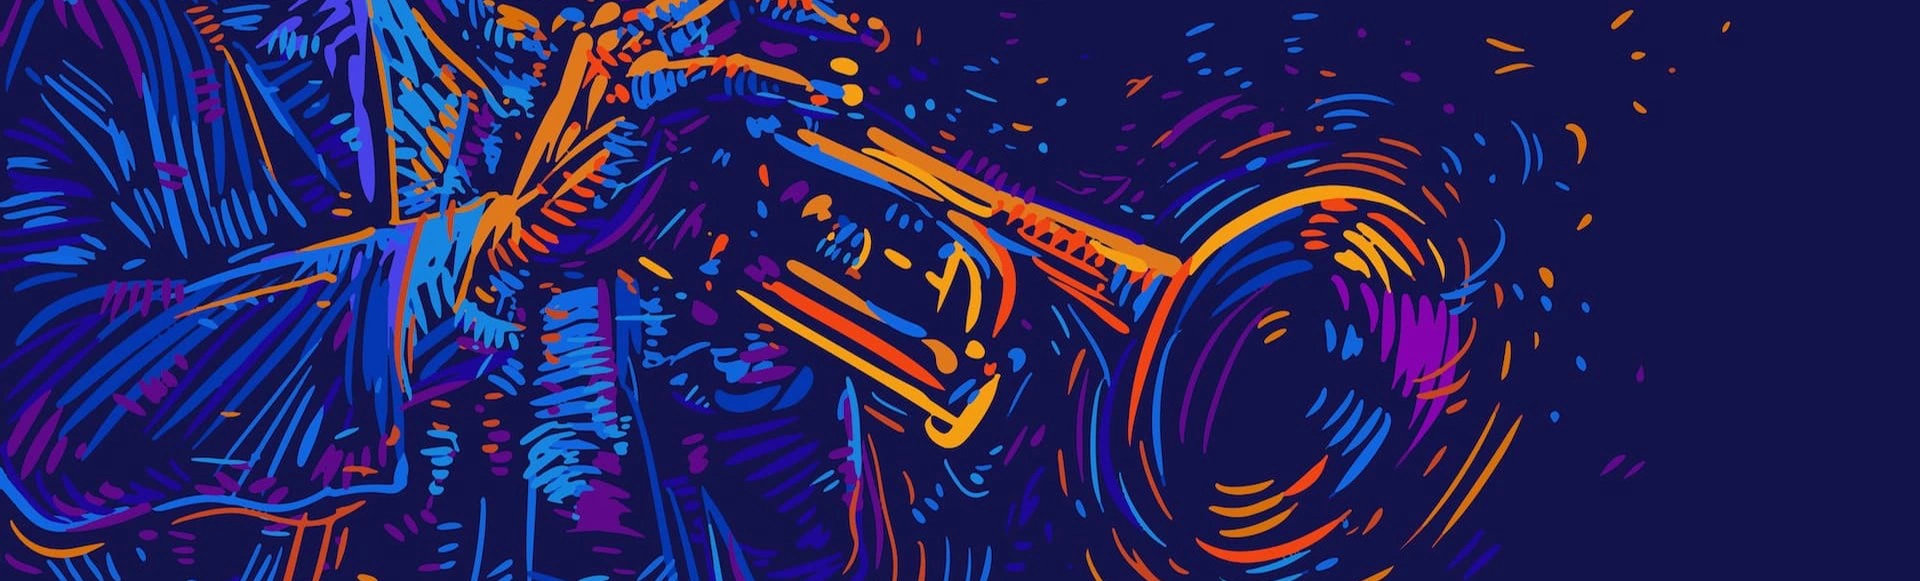 «Век джаза: от диксиленда до оркестра». Музыка 20-х годов XX века